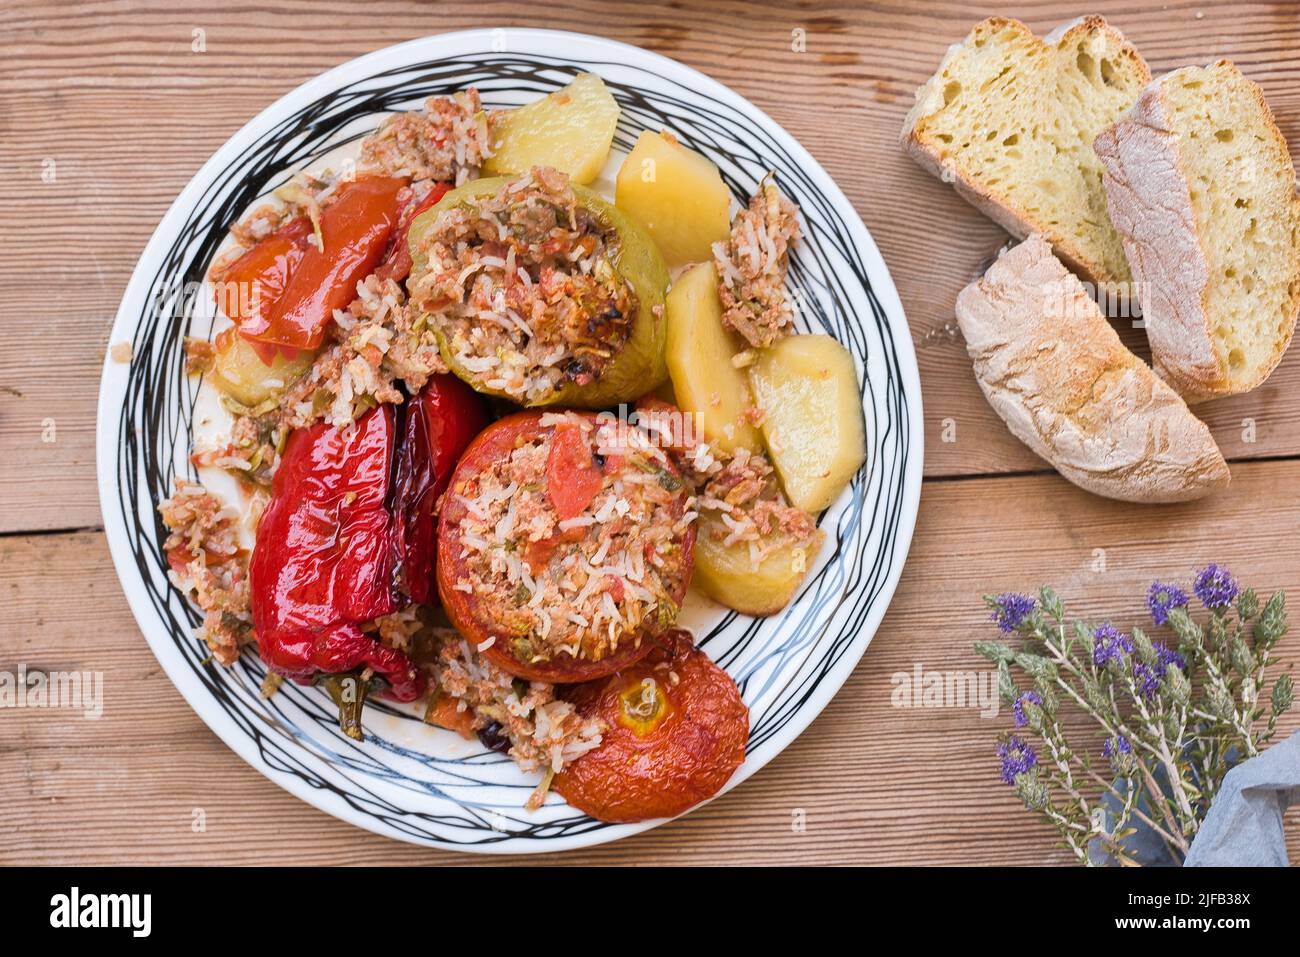 Cuisine grecque d'été, gemista. Tomates farcies et poivrons avec riz, oignon, viande hachée, cuits au four. Plats savoureux et légers. Banque D'Images